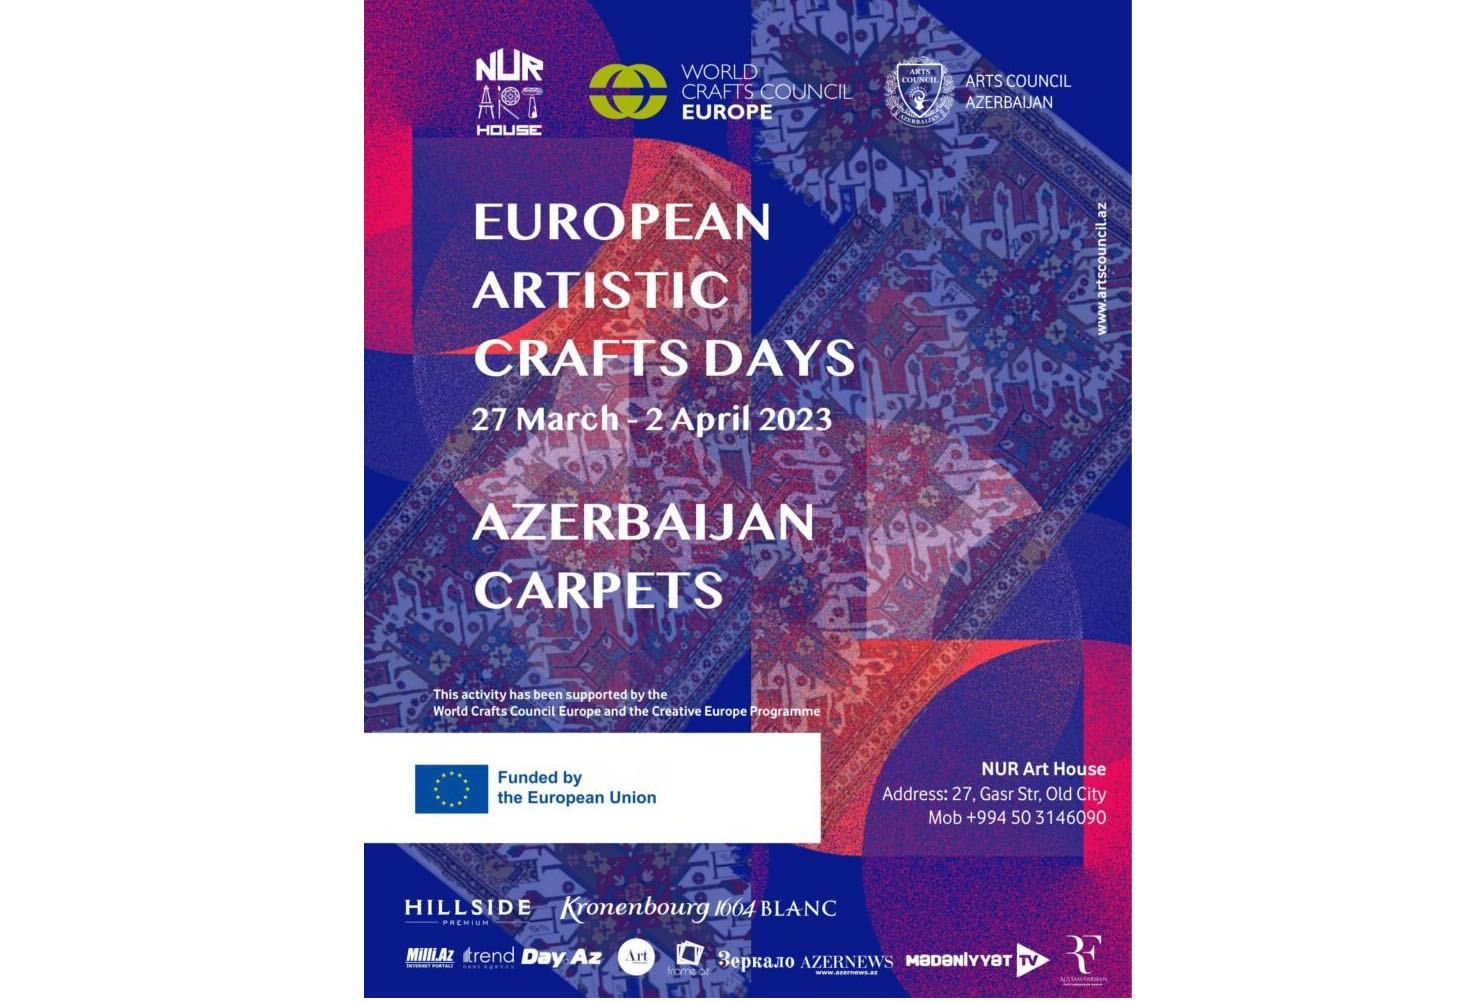 NUR Art House in Baku to host carpet exhibition within European Artistic Crafts Days